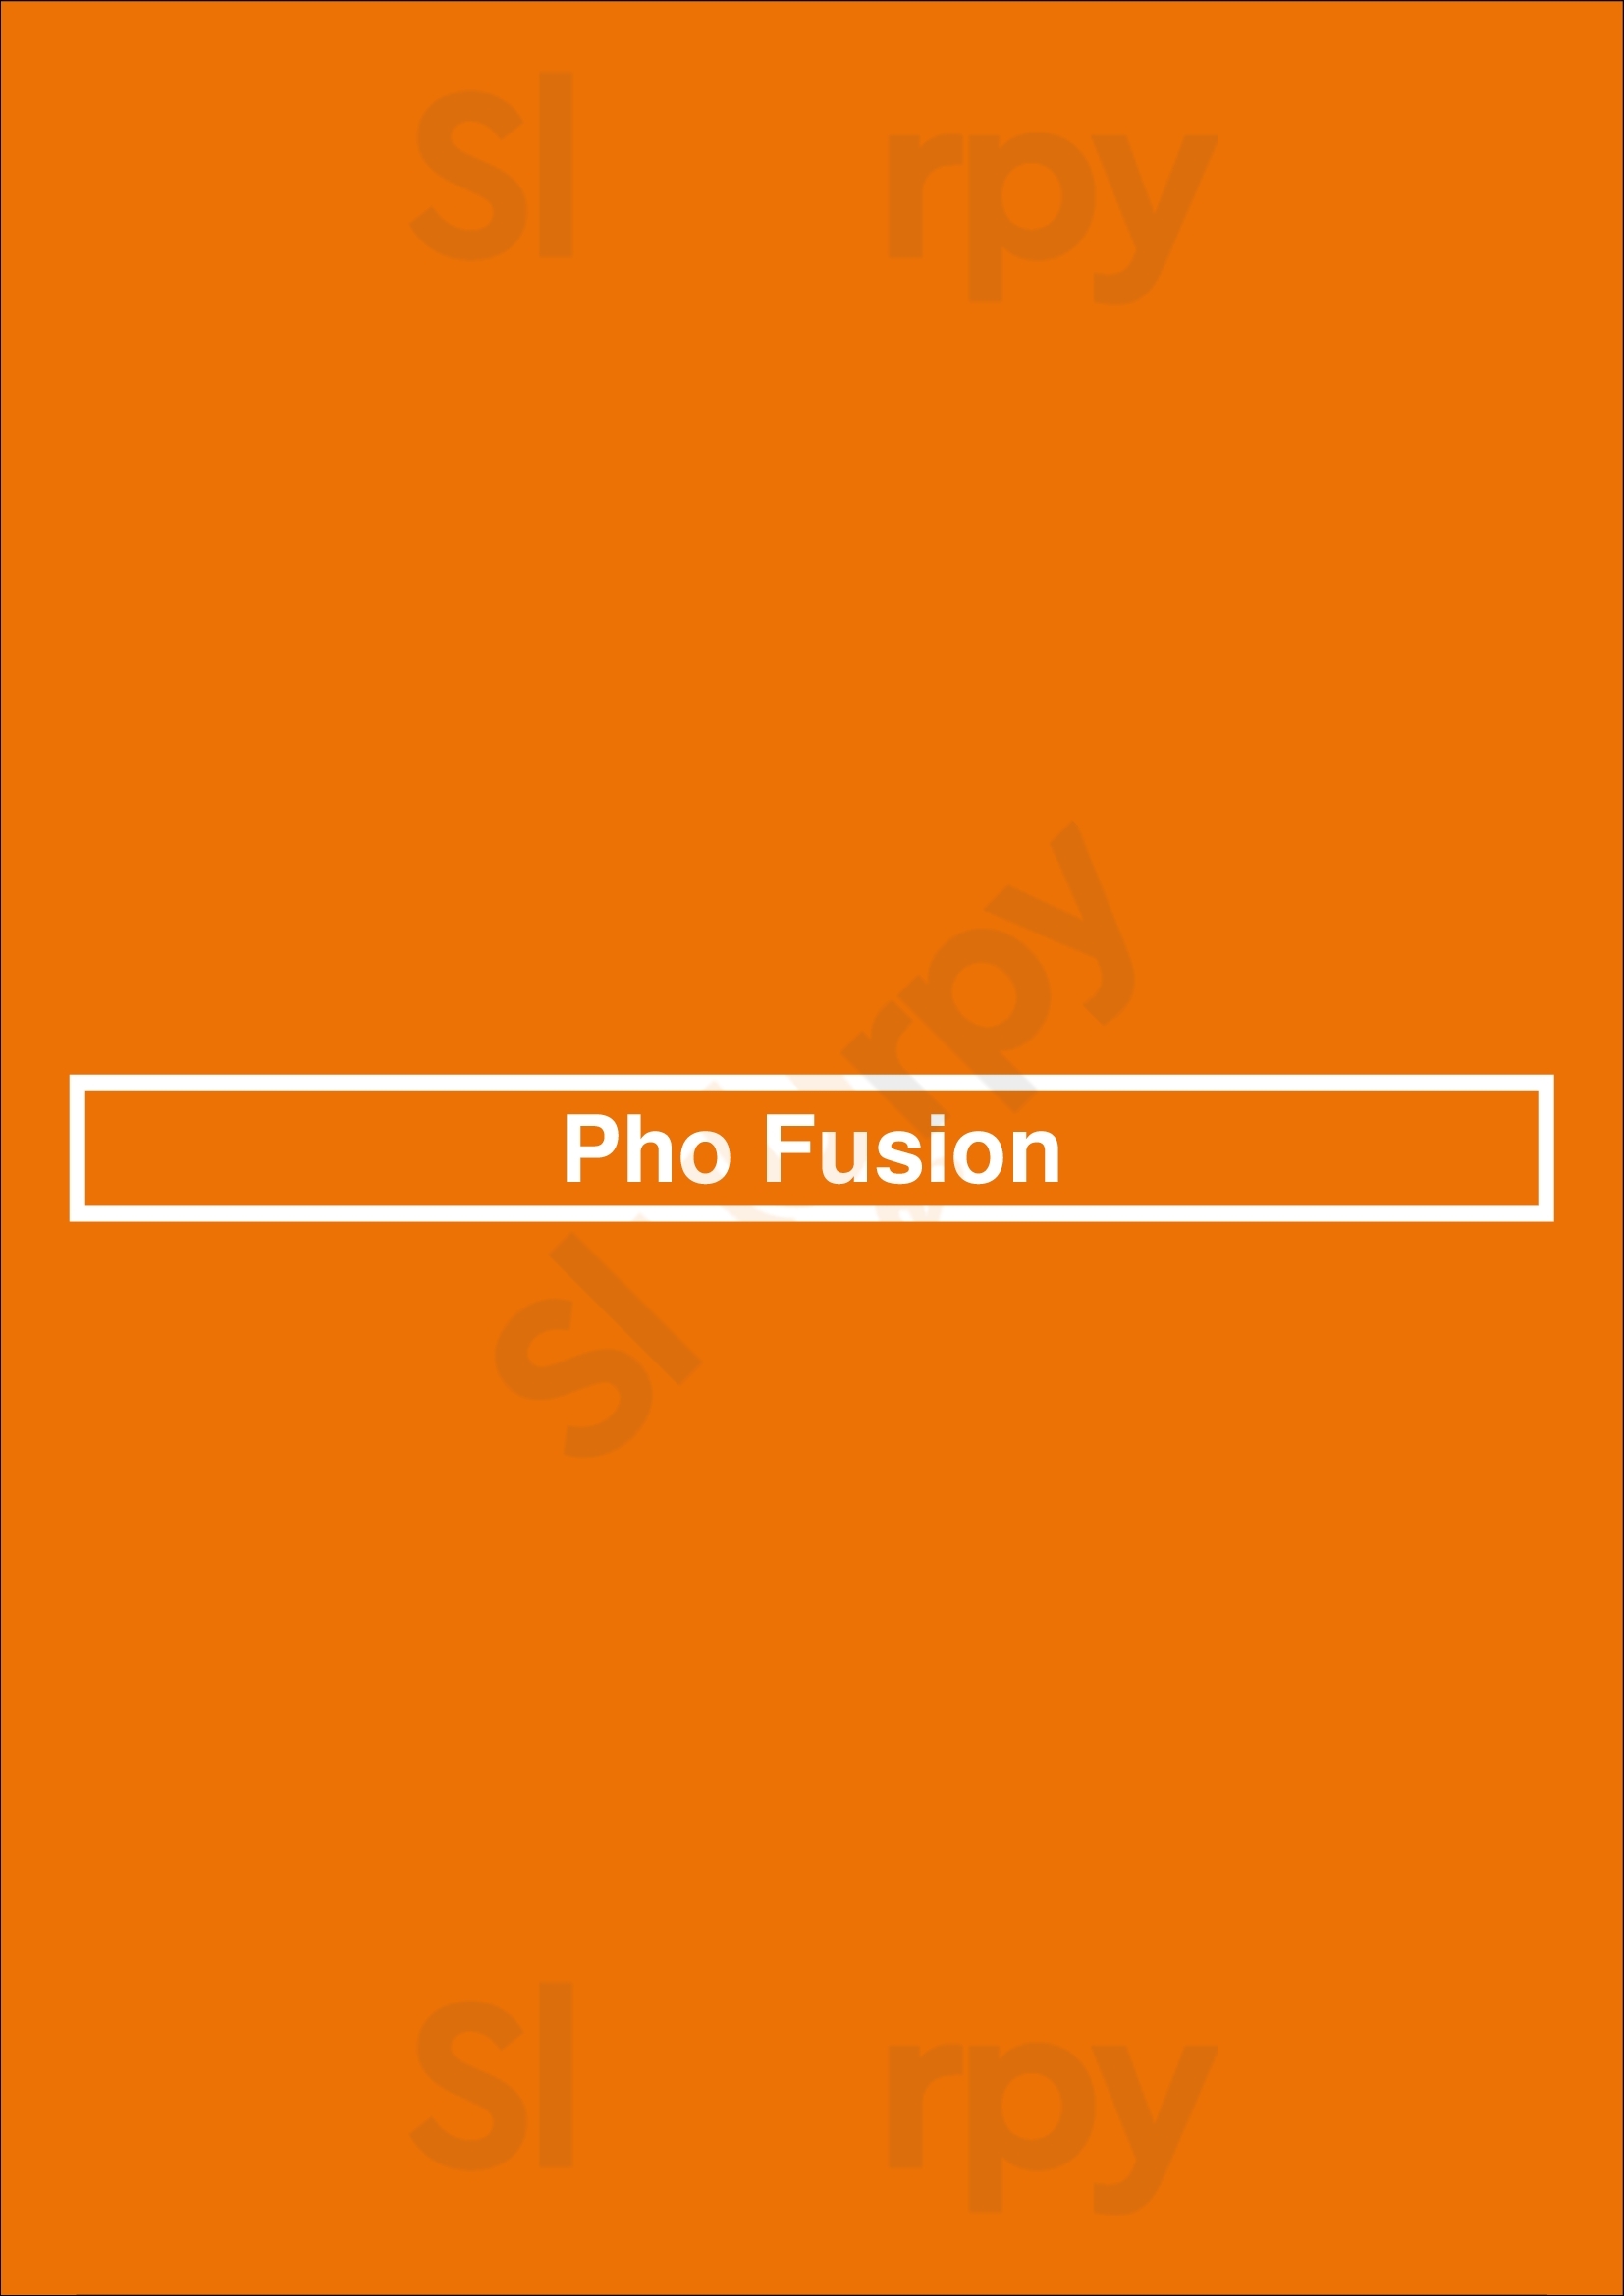 Pho Fusion Denver Menu - 1